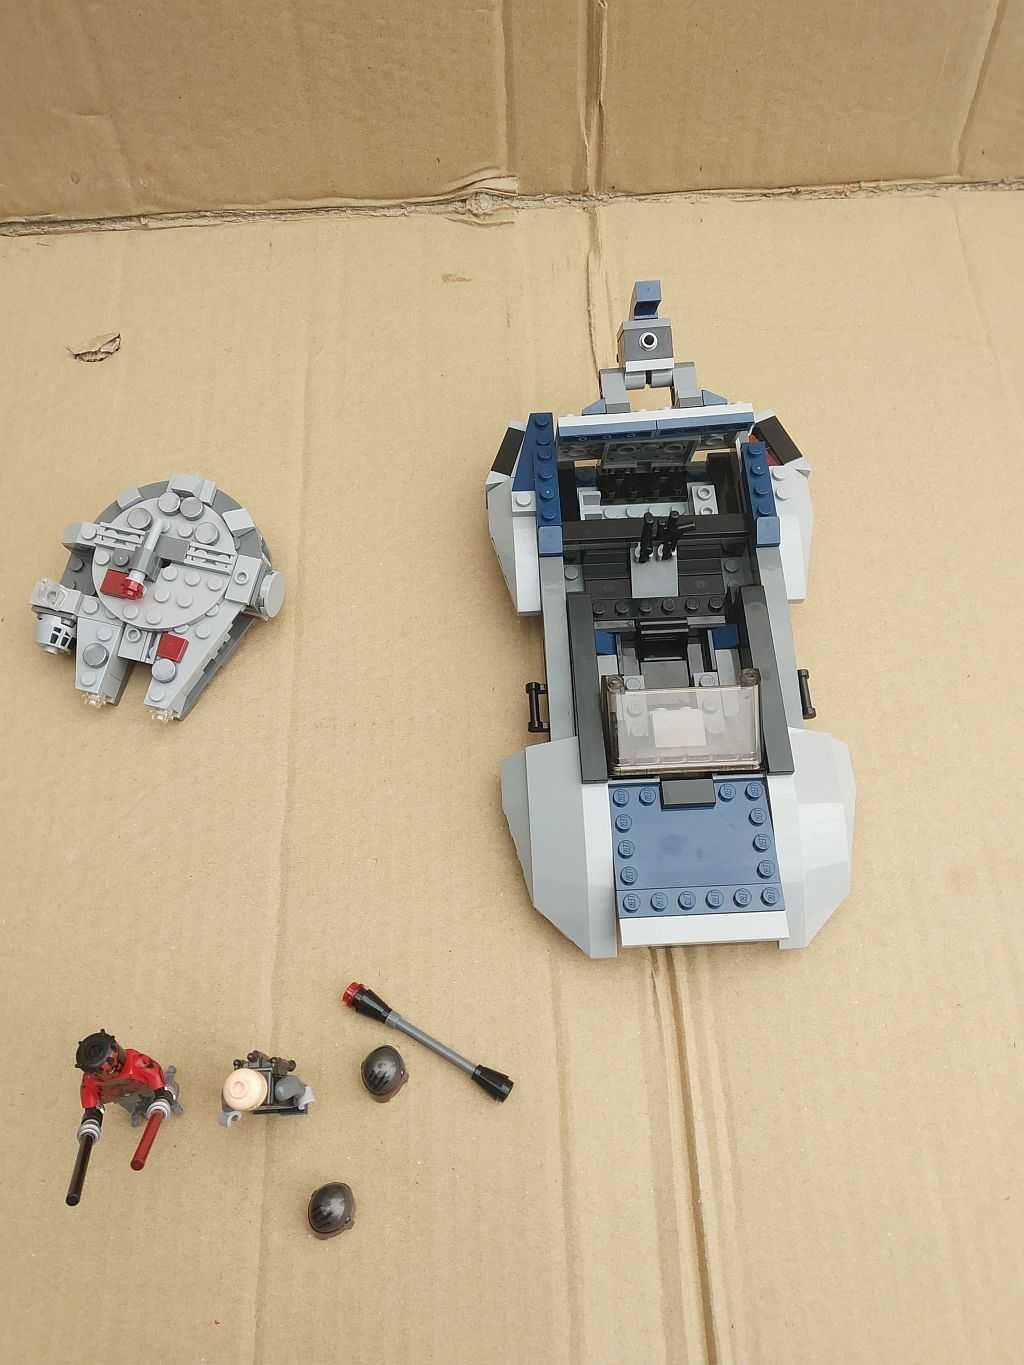 Lego Star Wars 75022 Mandalorian Speeder